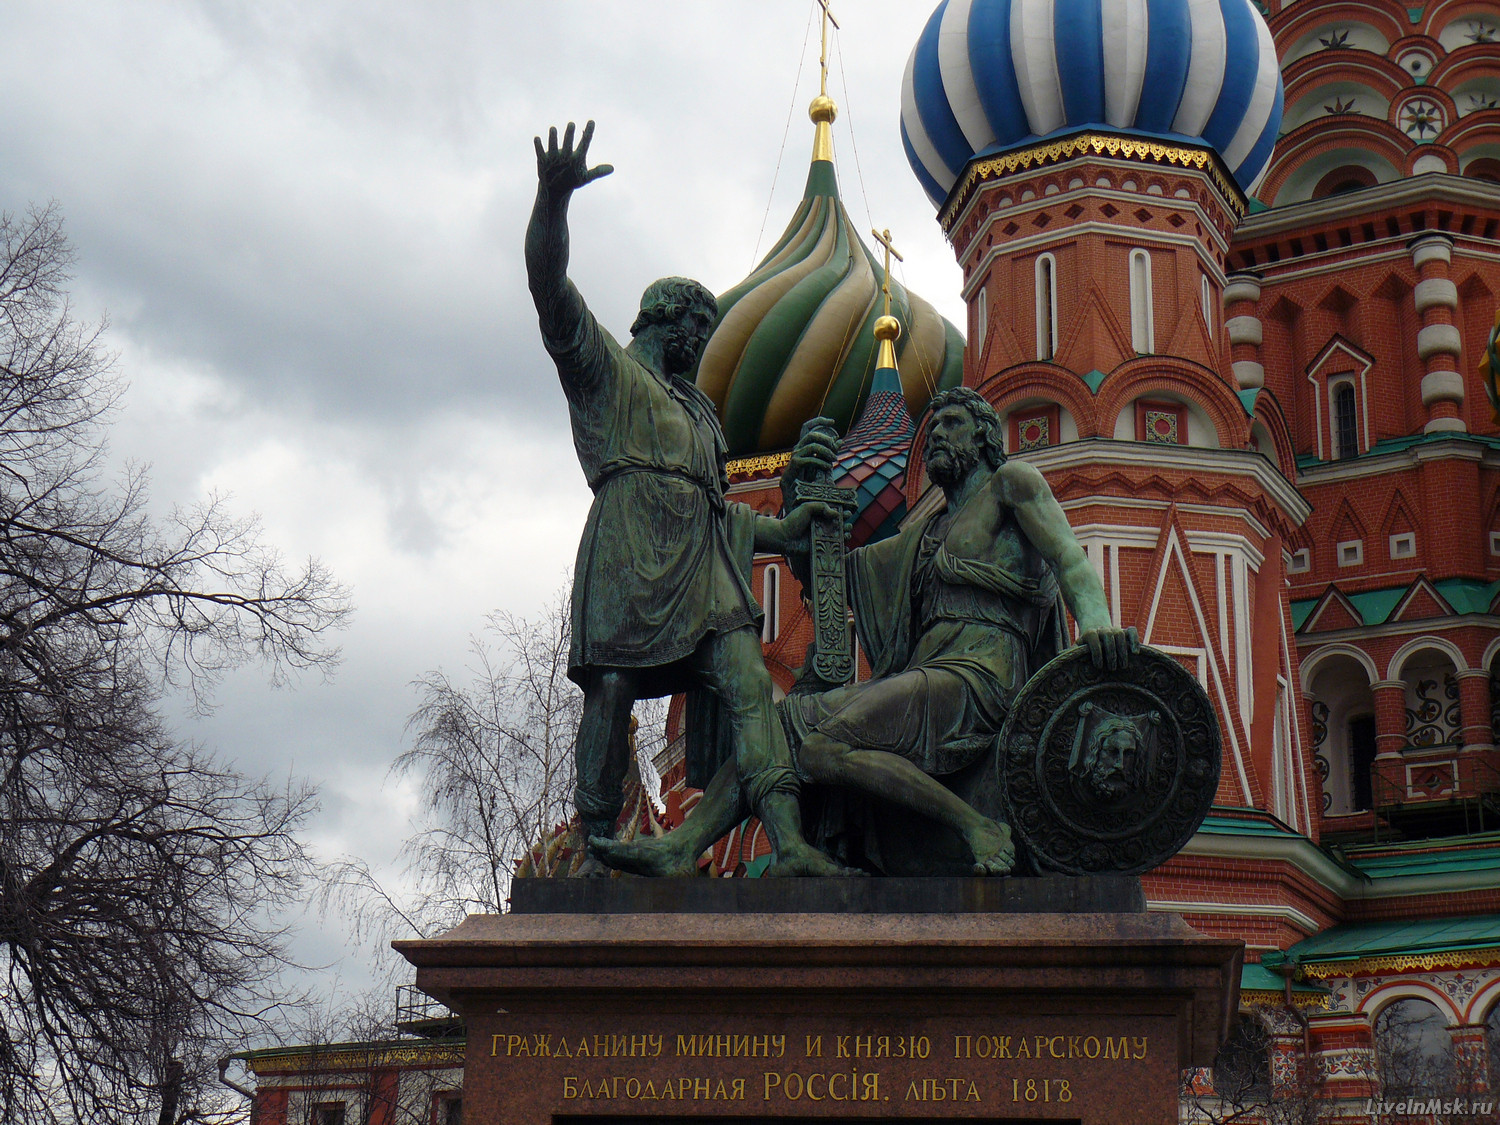 Памятник Минину и Пожарскому, фото 2015 года